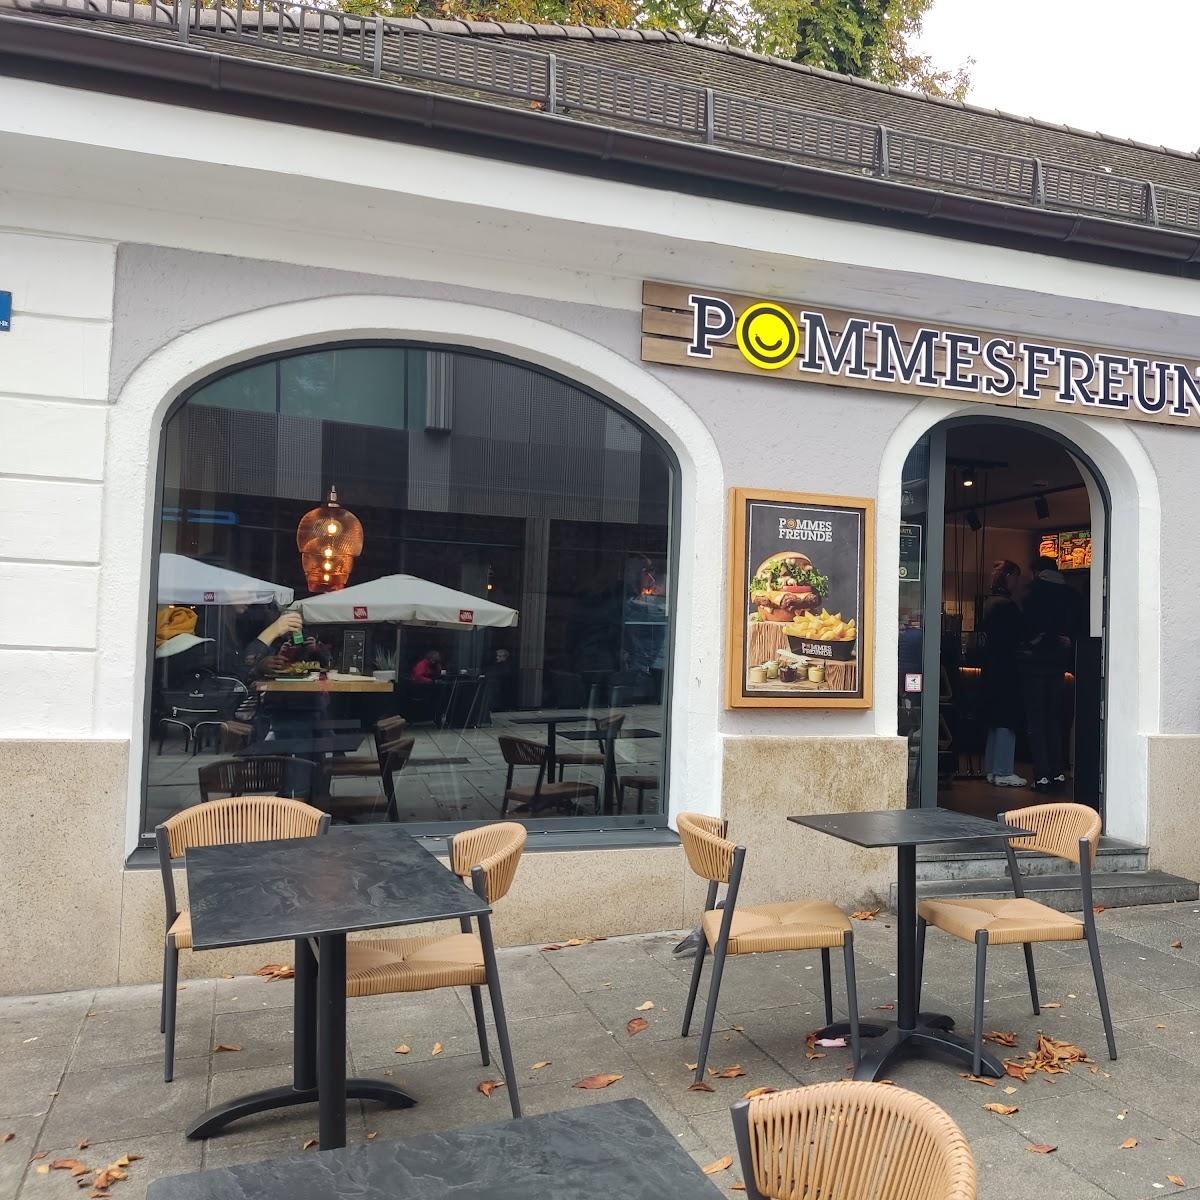 Restaurant "Pommes Freunde" in Passau